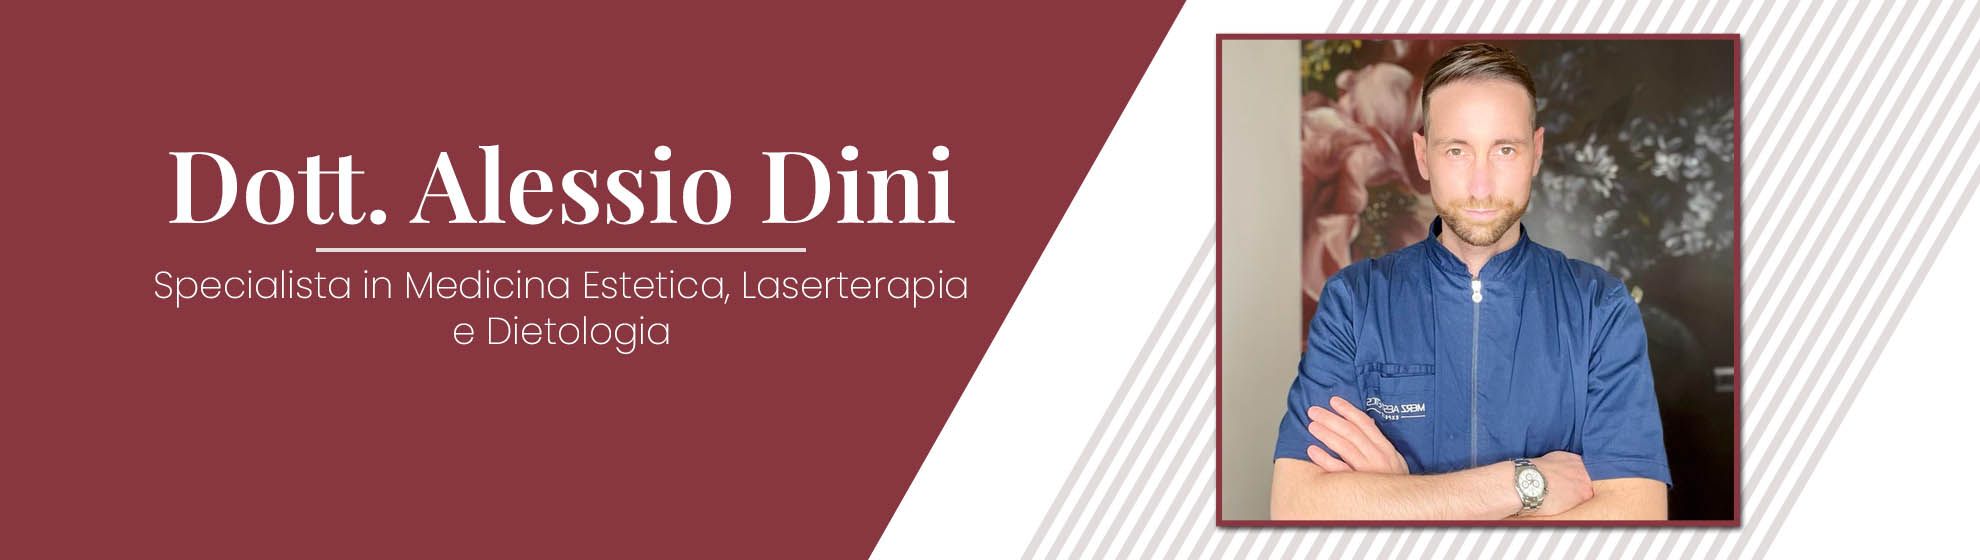 Dott. Alessio Dini